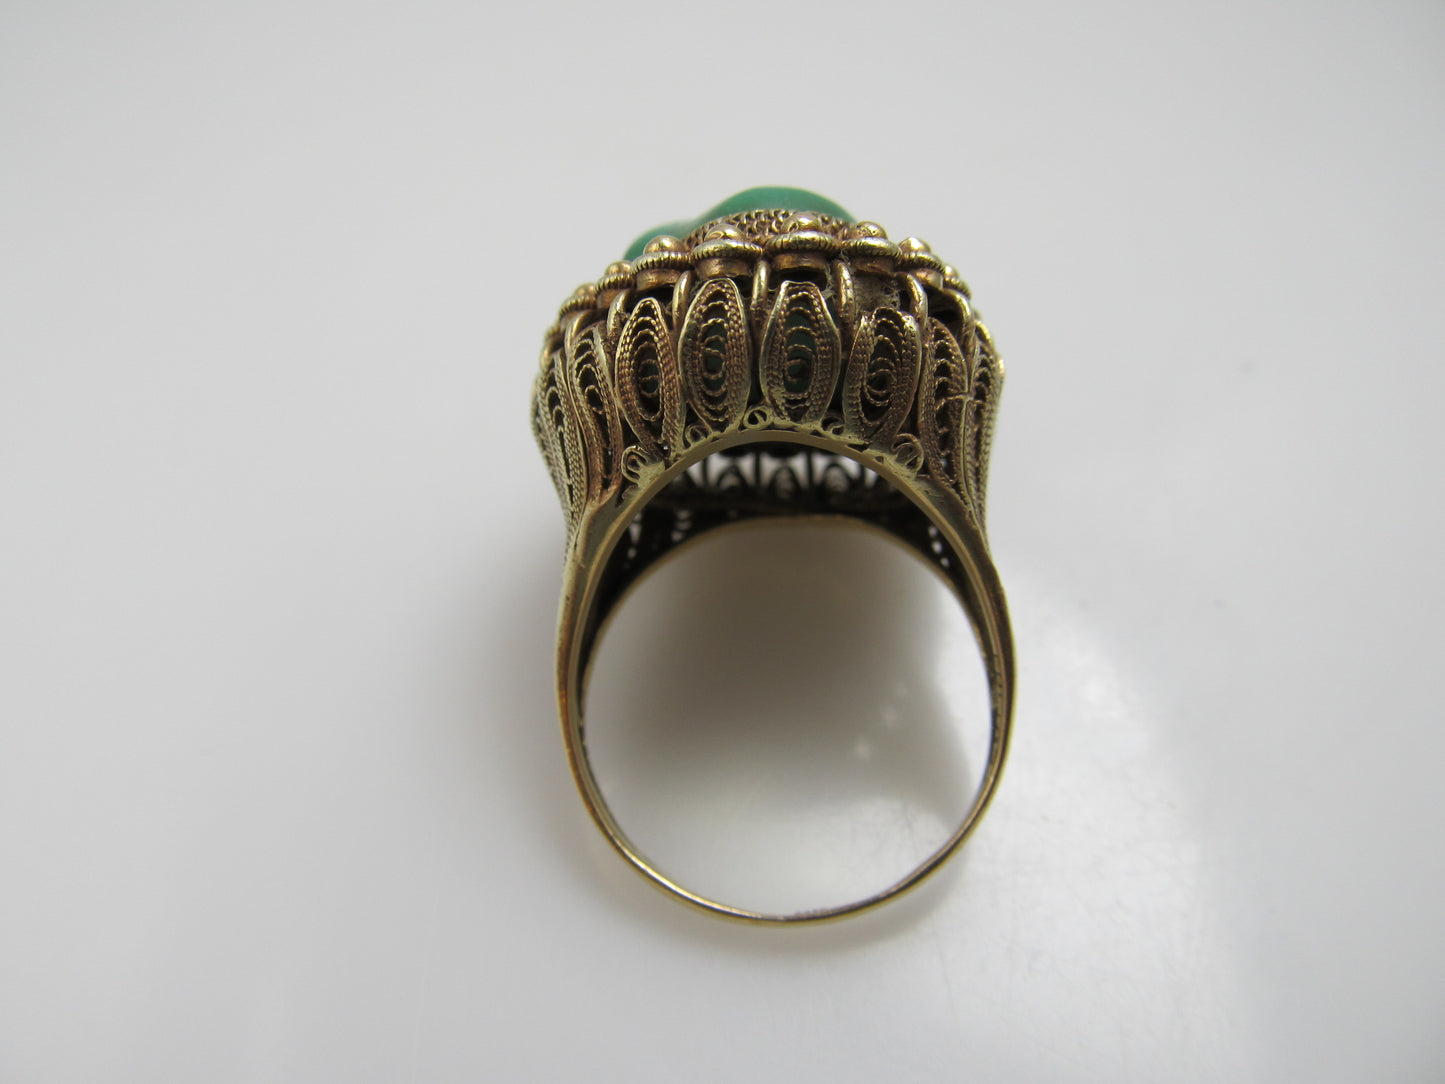 Vintage Chinese 14k Yellow Gold Filigree Turquoise Ring, Circa 1920